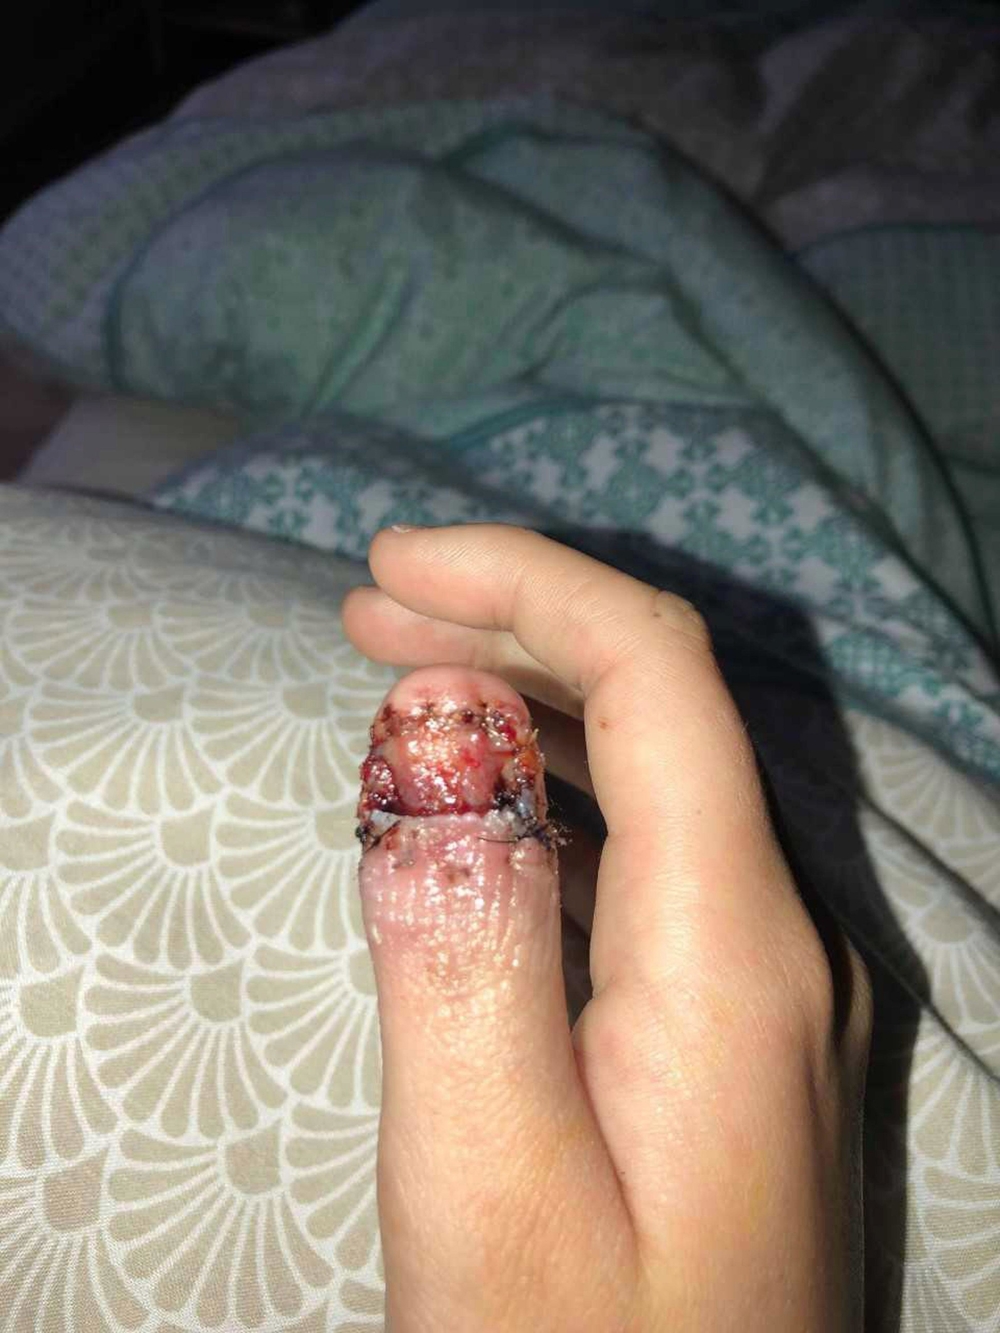 
Ngón tay cái khủng khiếp của Courtney